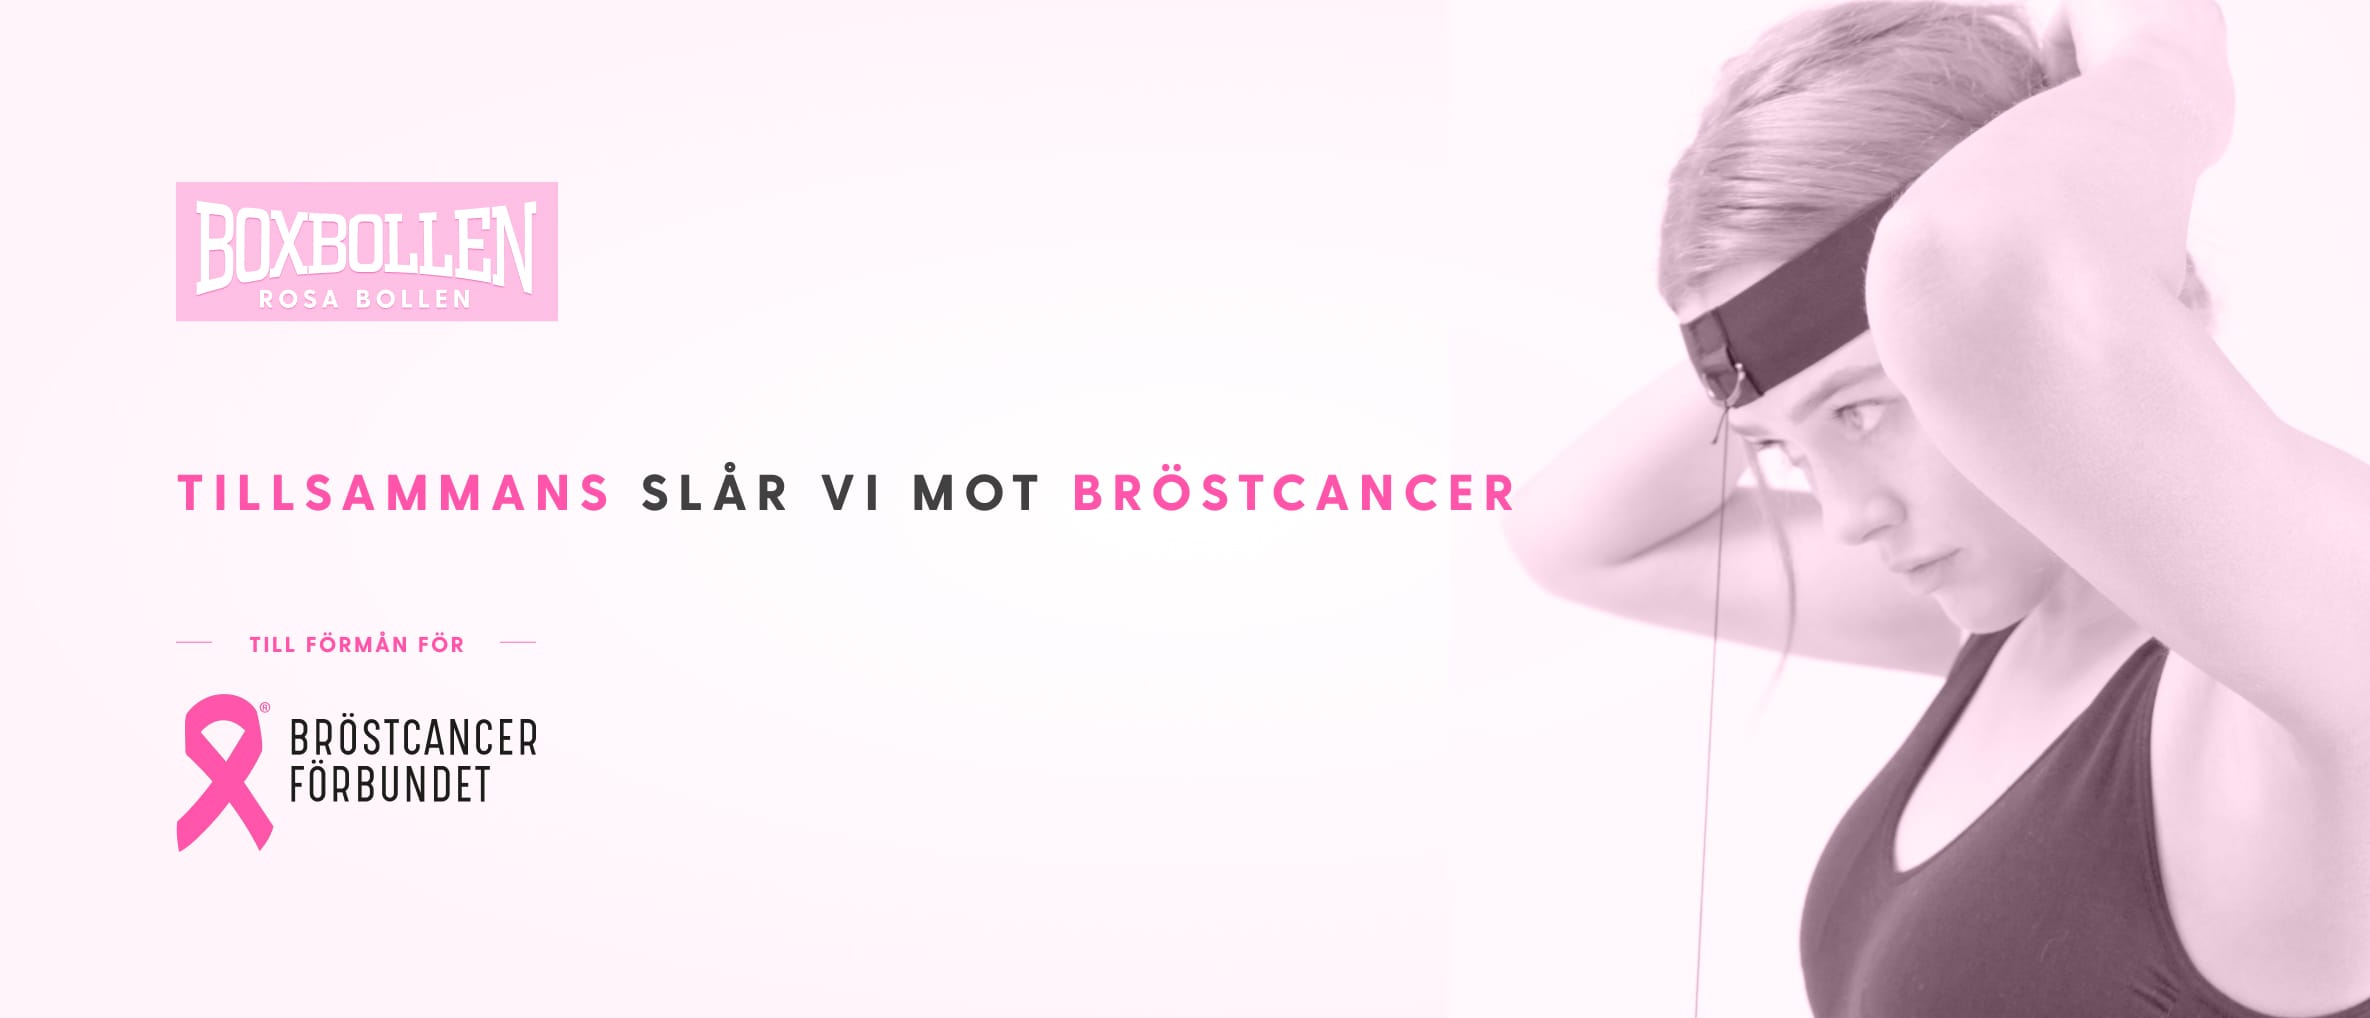 Boxbollen och Bröstcancerförbundet slår mot bröstcancer.